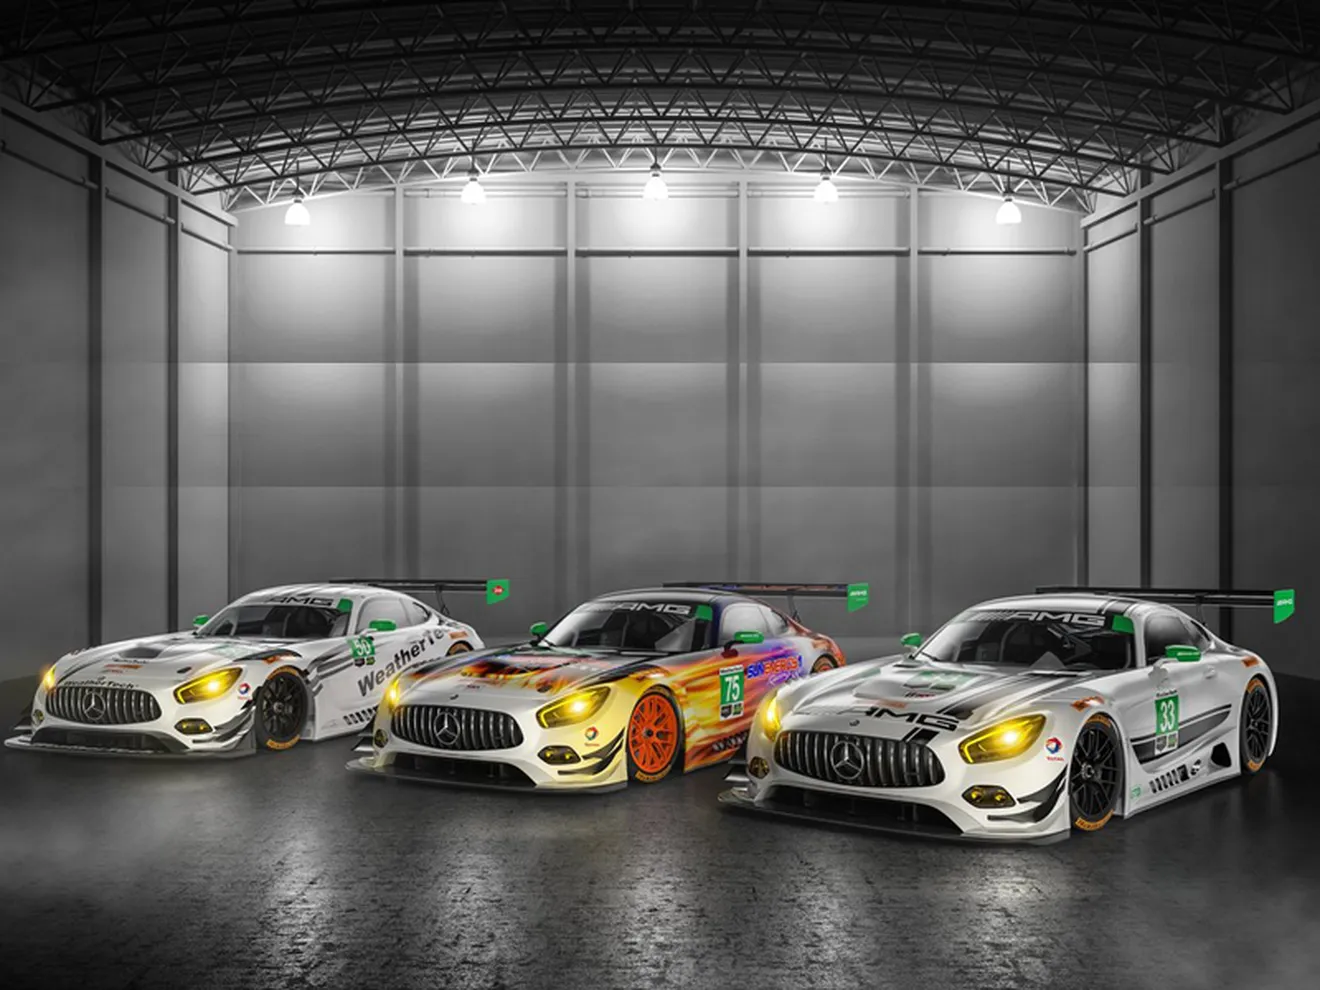 Mercedes-AMG se va a 'hacer las américas' con su GT3